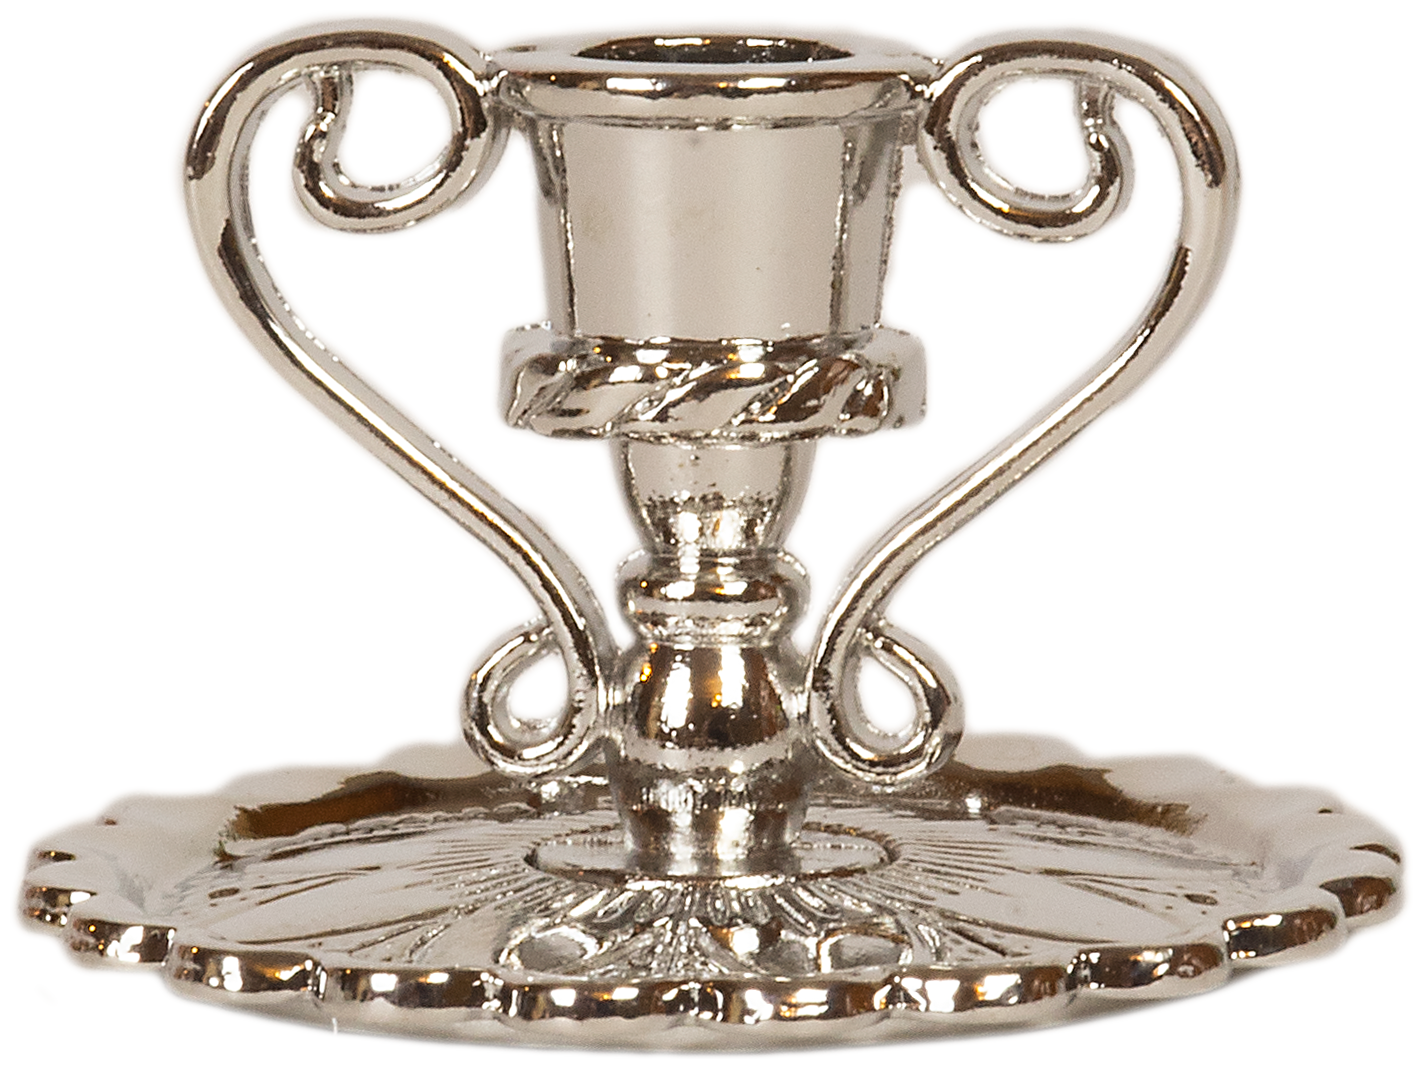 Подсвечник церковный металлический серебро с ручками / Подсвечник для свечи религиозный диаметр - 8 мм под свечу высота - 2.5 см ширина - 3 см